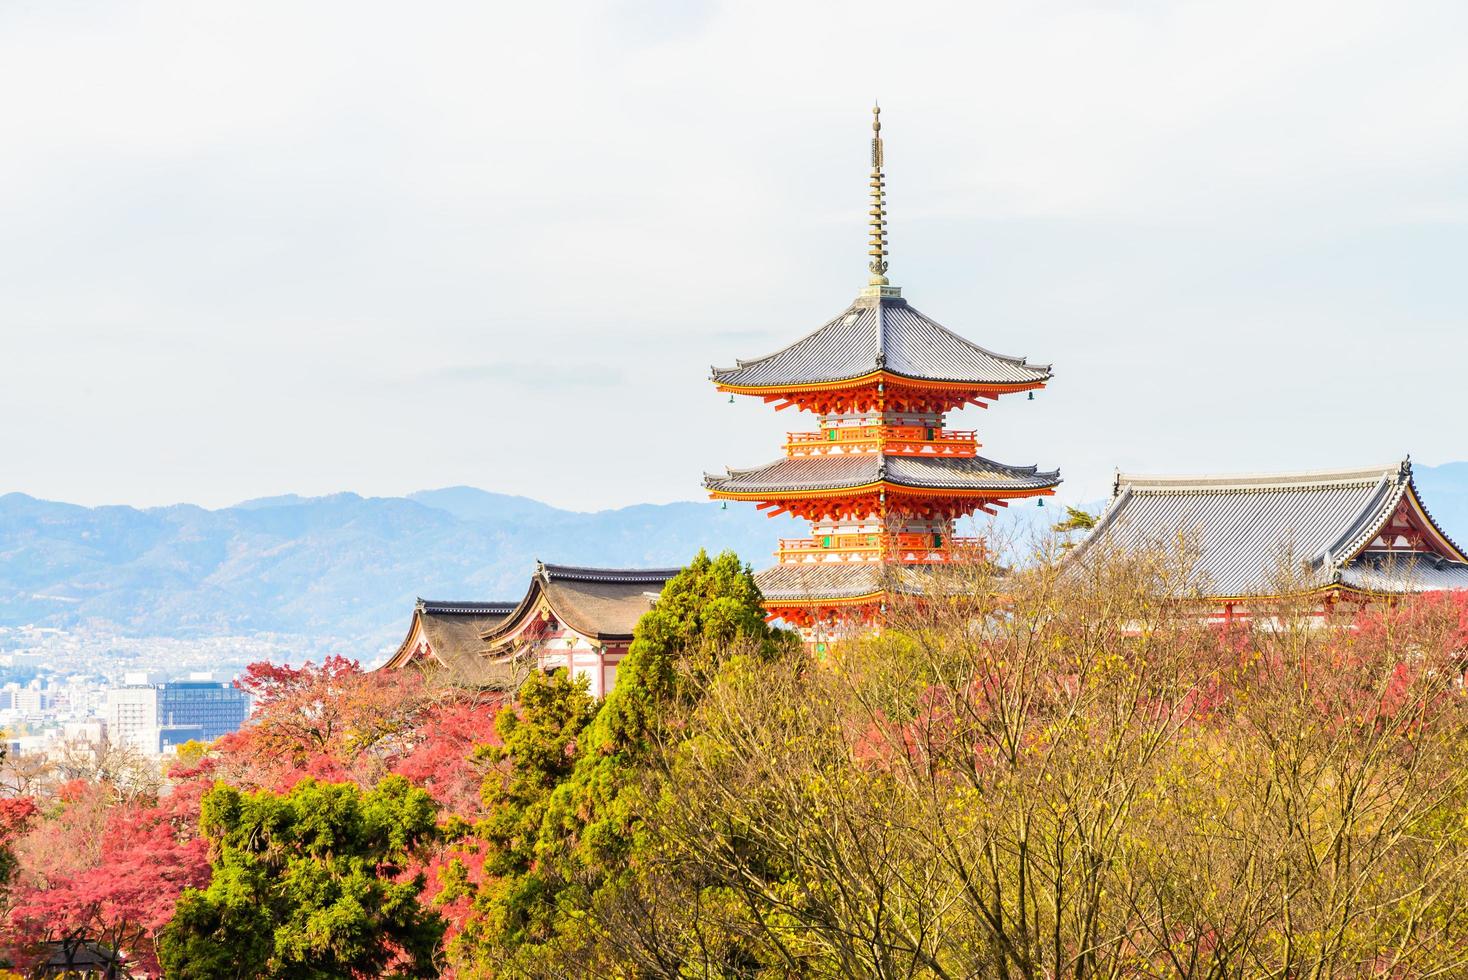 templo kiyomizu dera em kyoto, japão foto